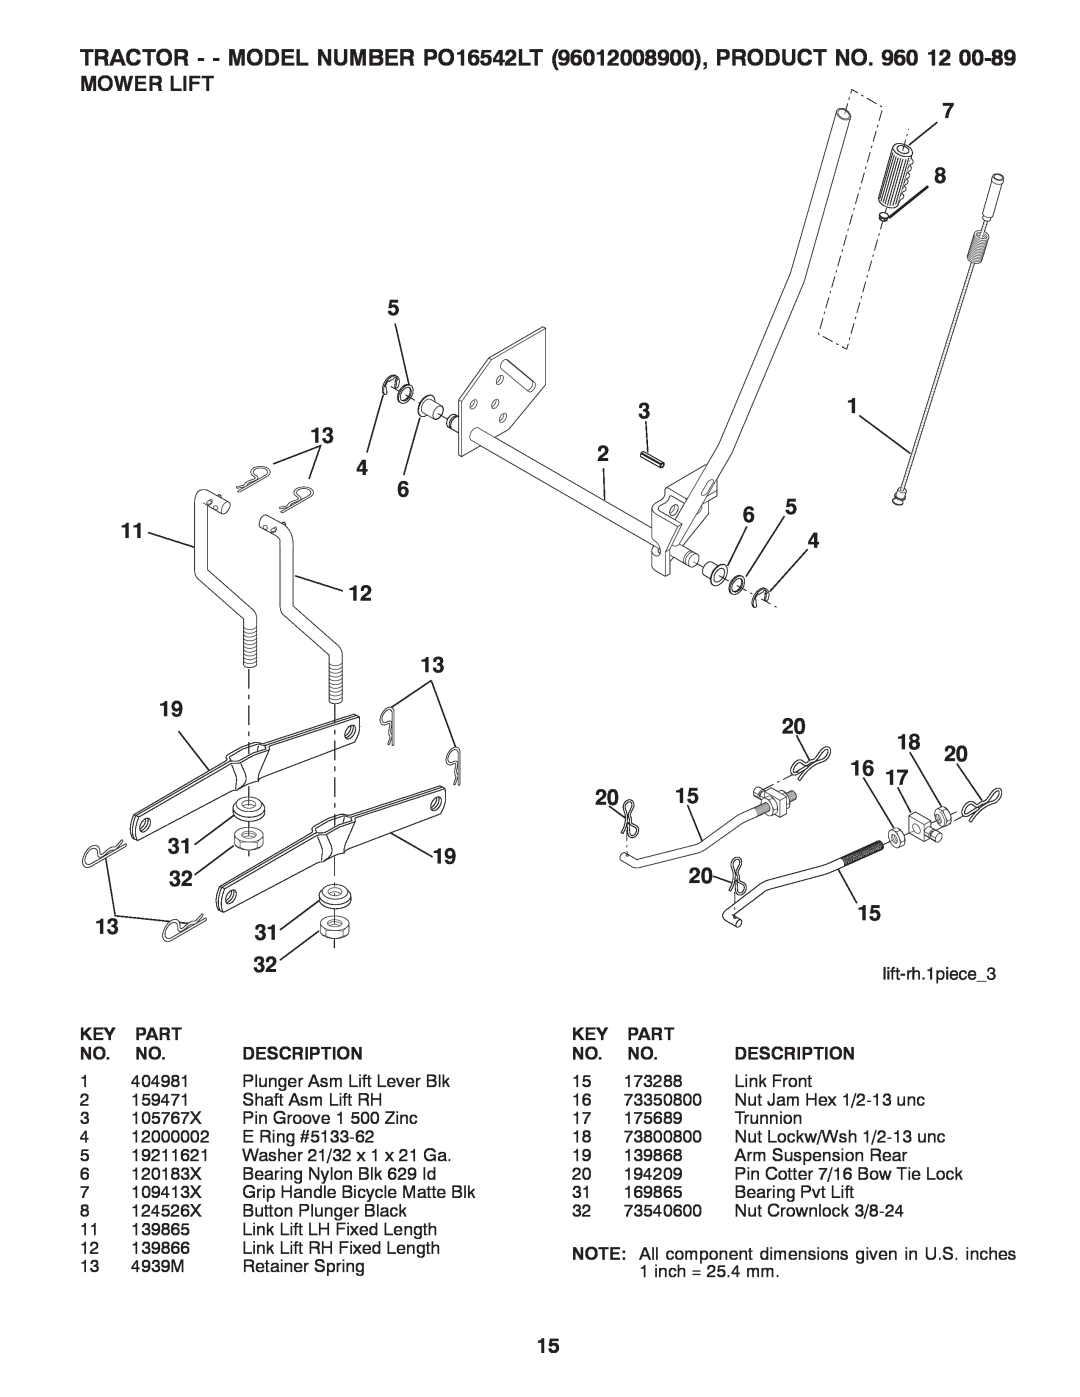 Poulan manual Mower Lift, lift-rh.1piece3, TRACTOR - - MODEL NUMBER PO16542LT 96012008900, PRODUCT NO, Part, Description 